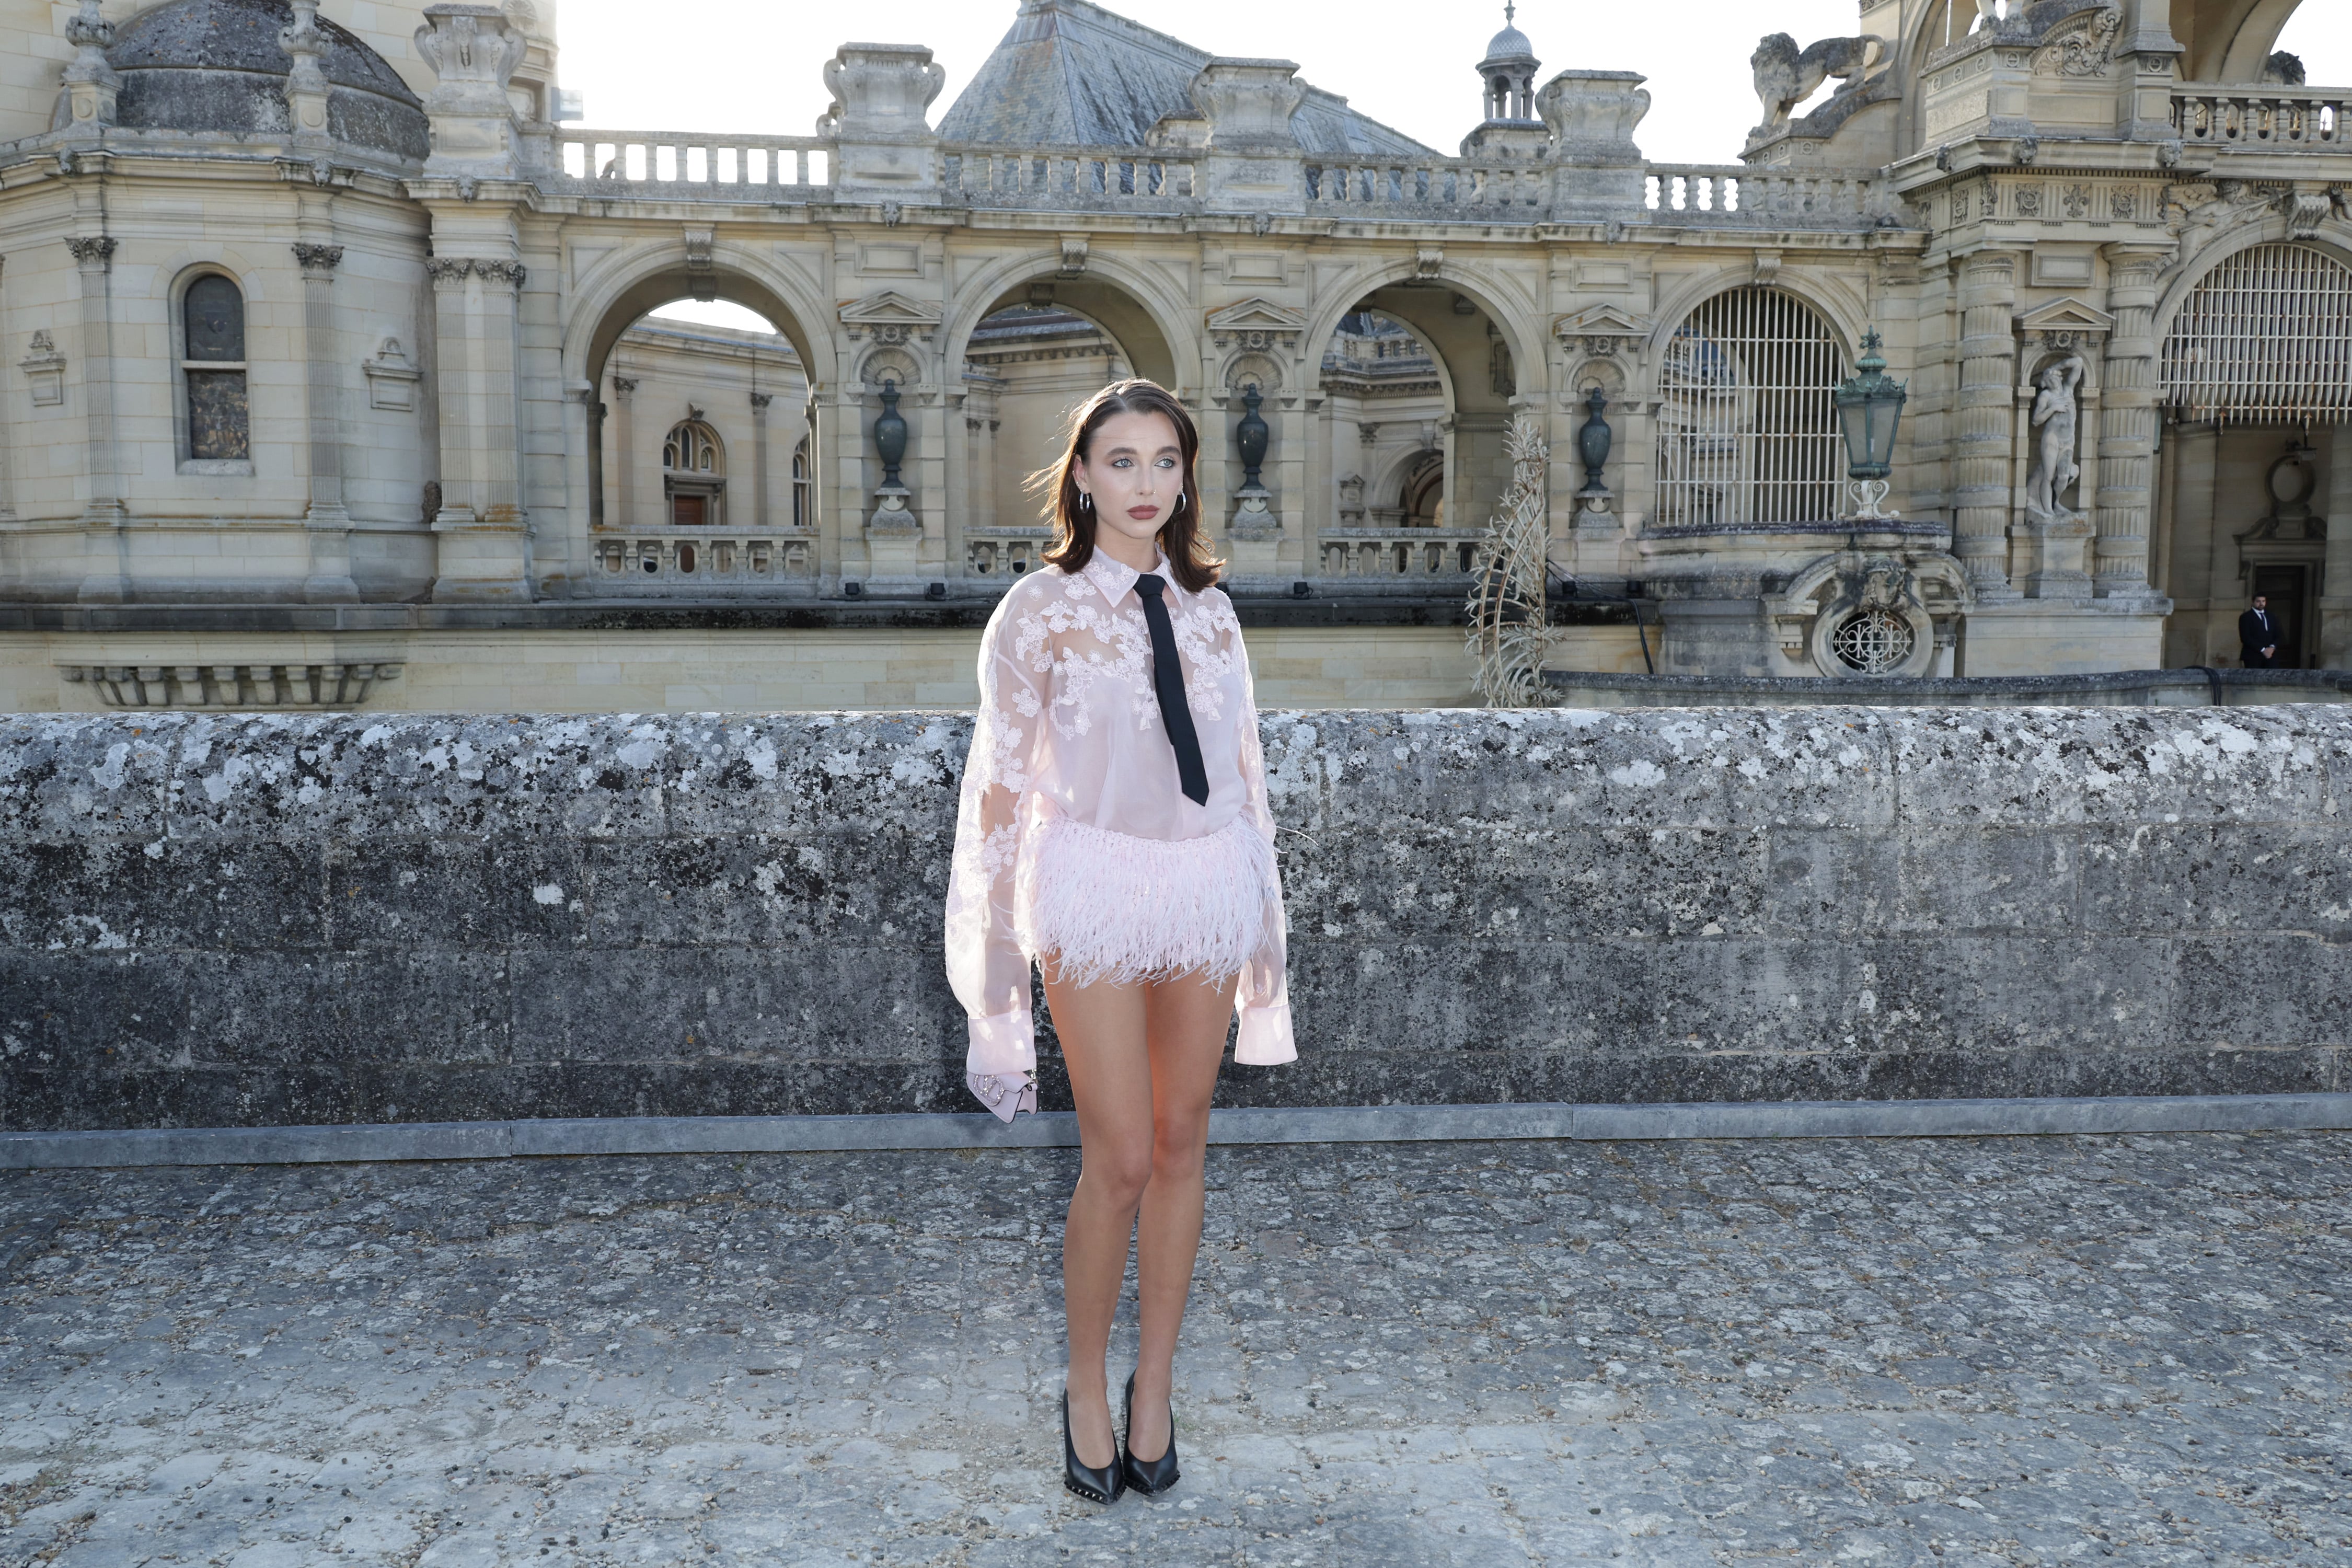  Louis Vuitton Host Emma Chamberlain At Paris Fashion Week